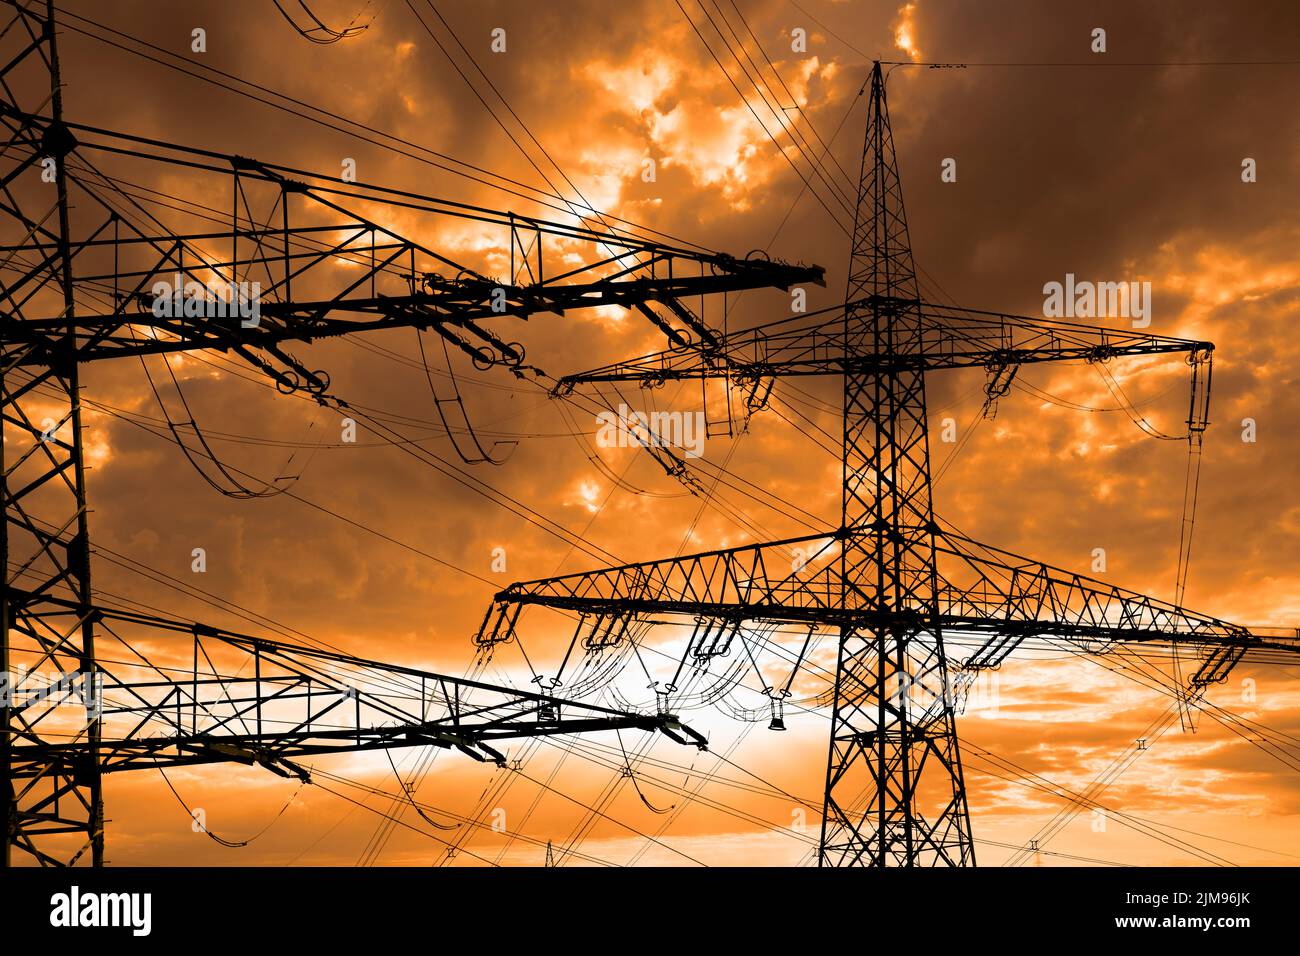 Viele elektrische Pole mit Wolken am Himmel Stockfoto